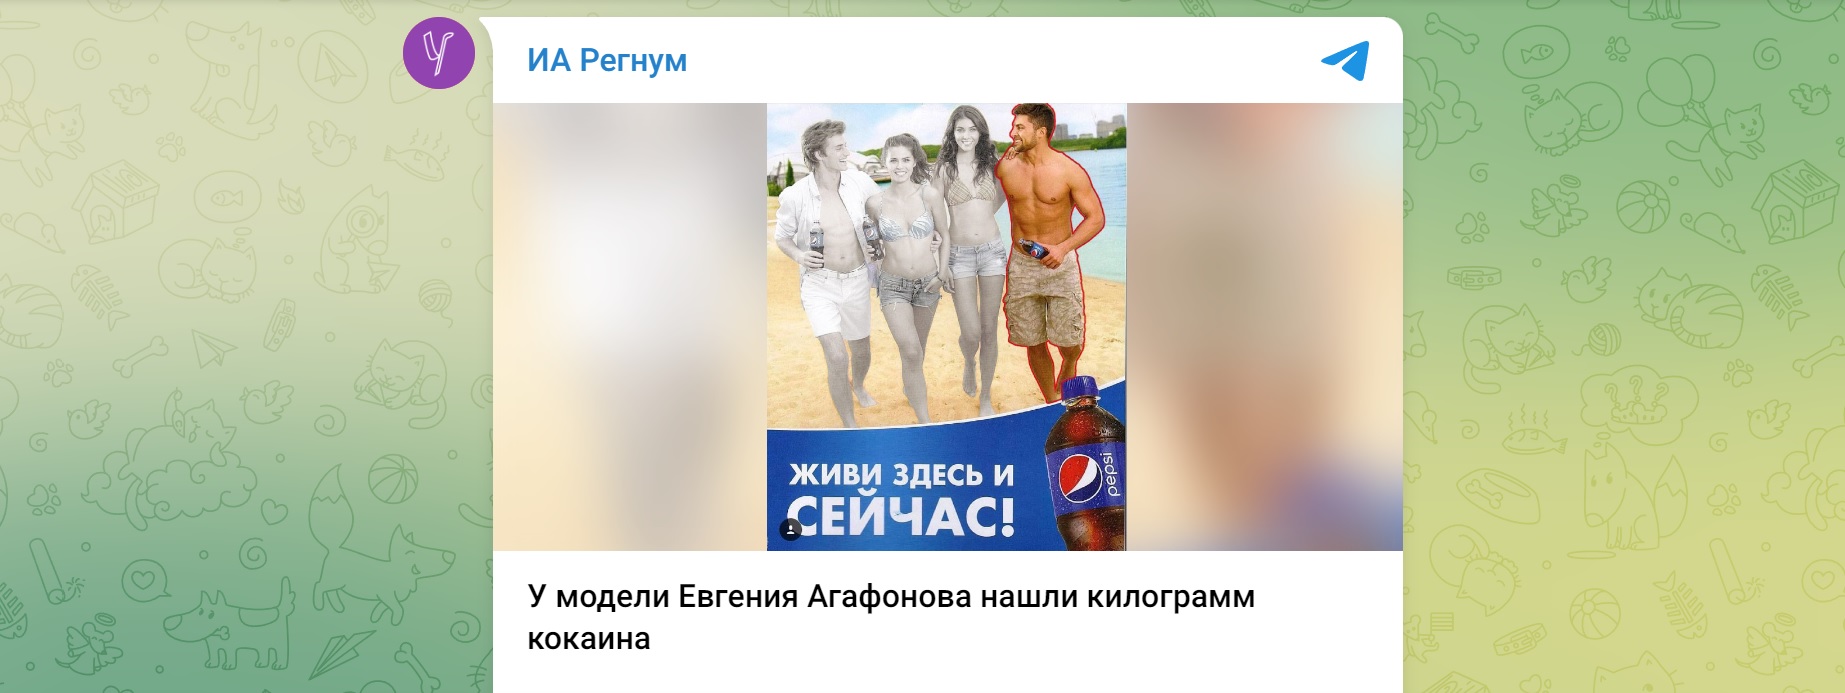 Модель из рекламы Pepsi задержали с килограммом кокаина в Подмосковье